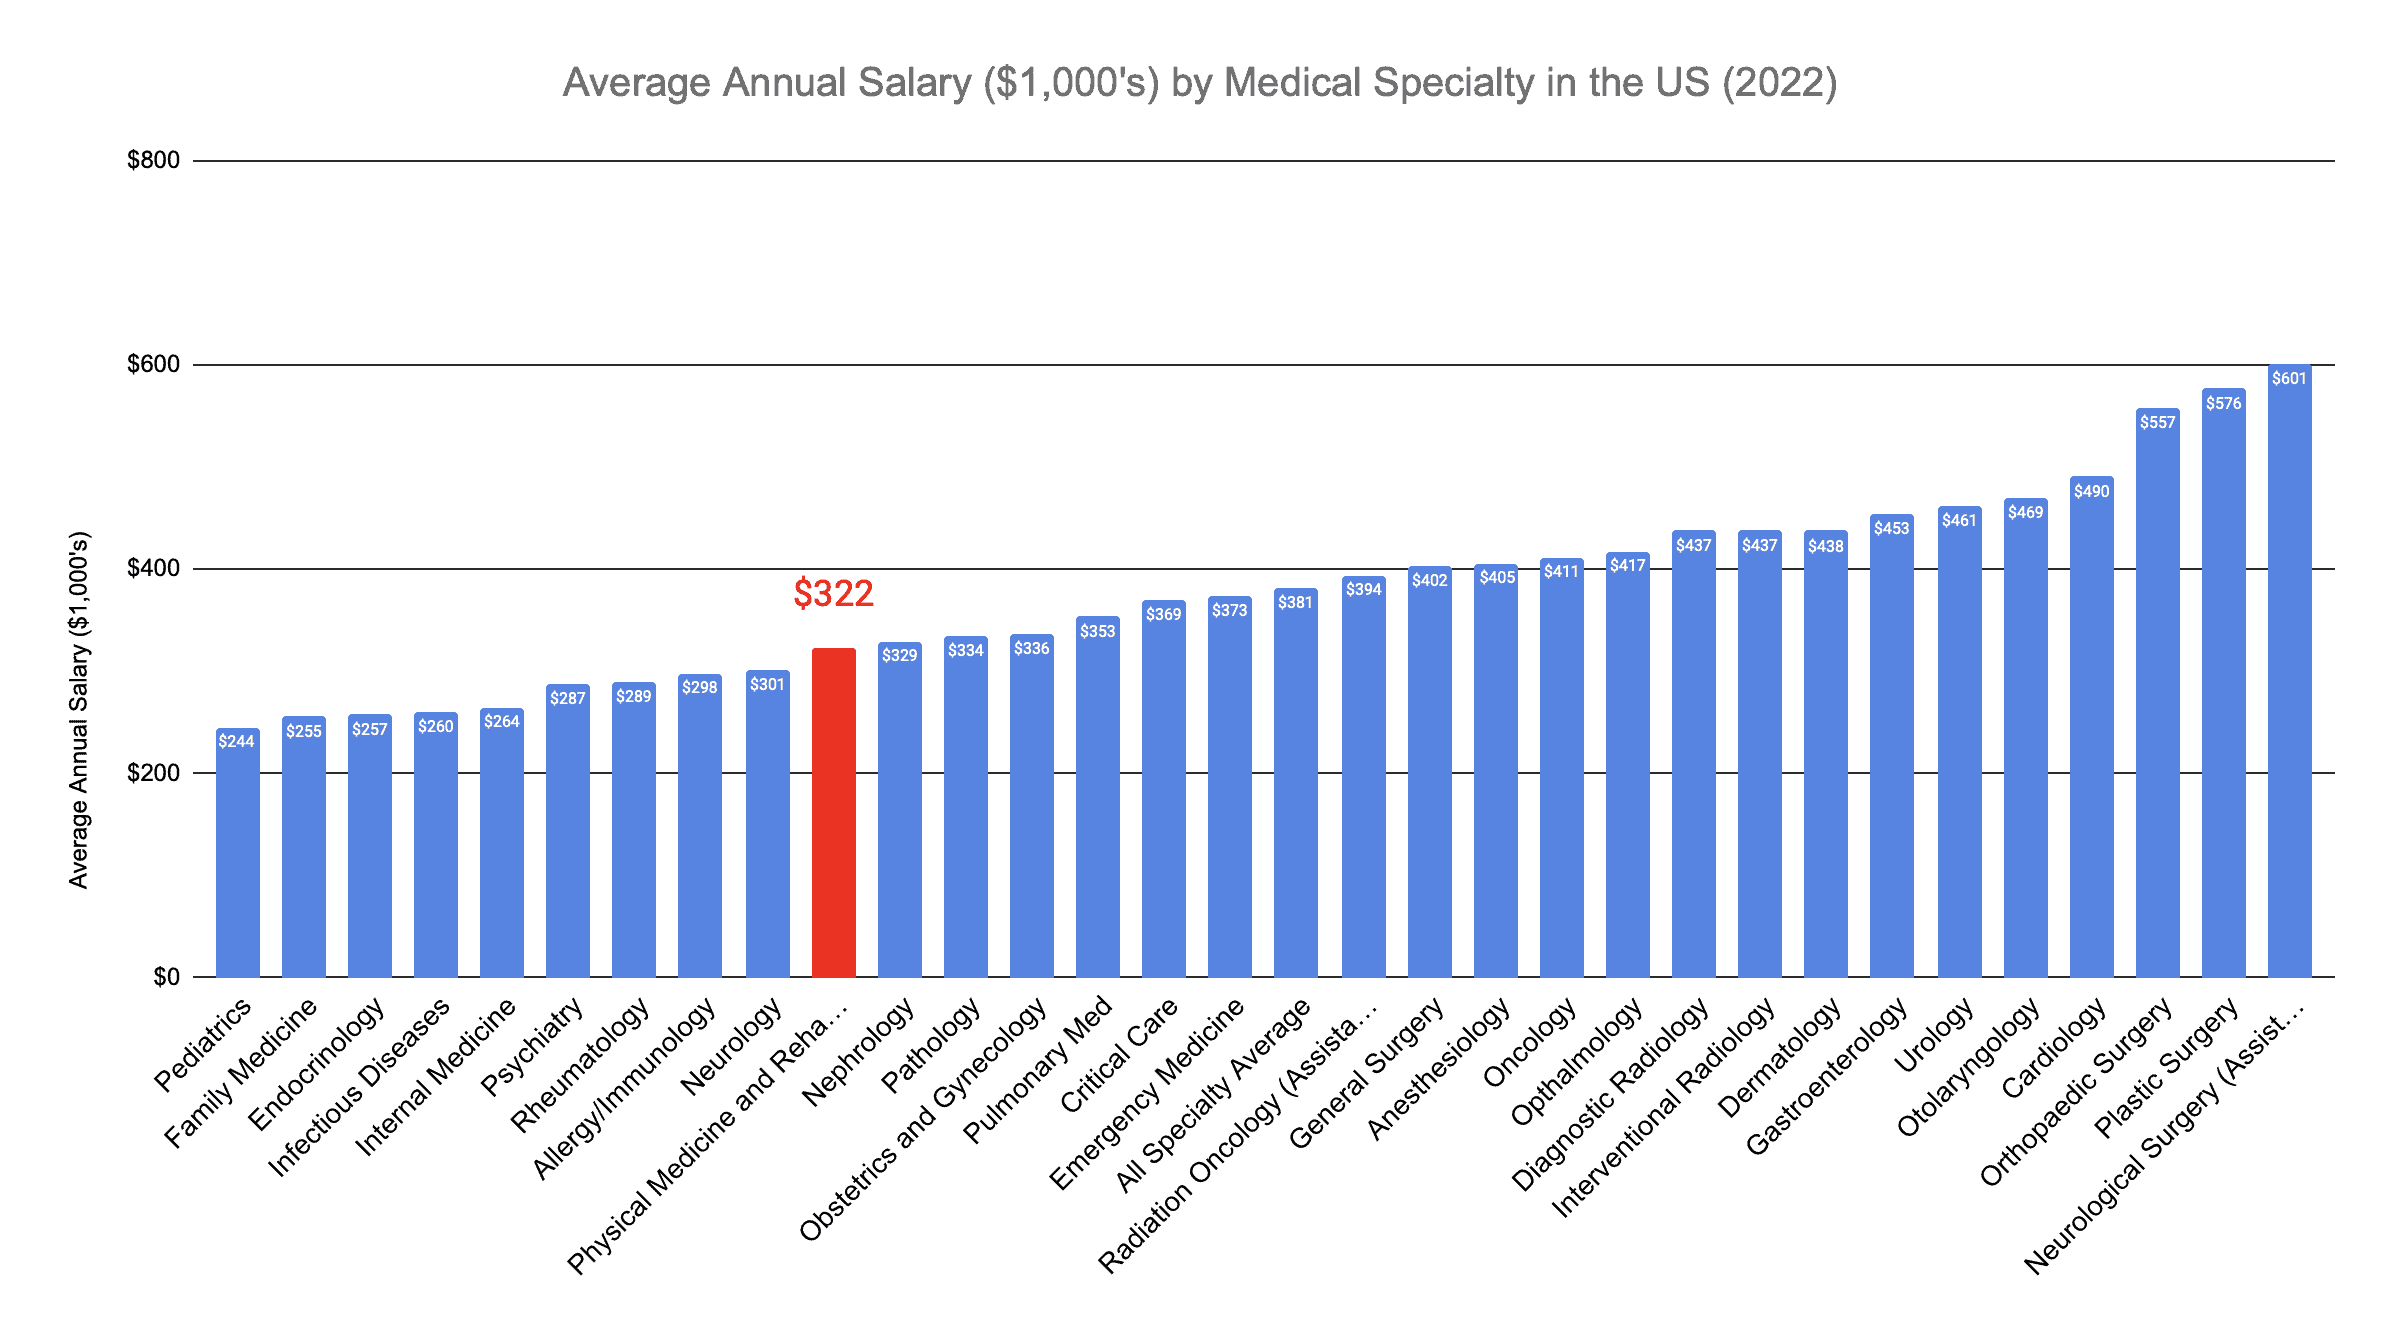 Physical Medicine and Rehabilitation Physicians' Annual Salary